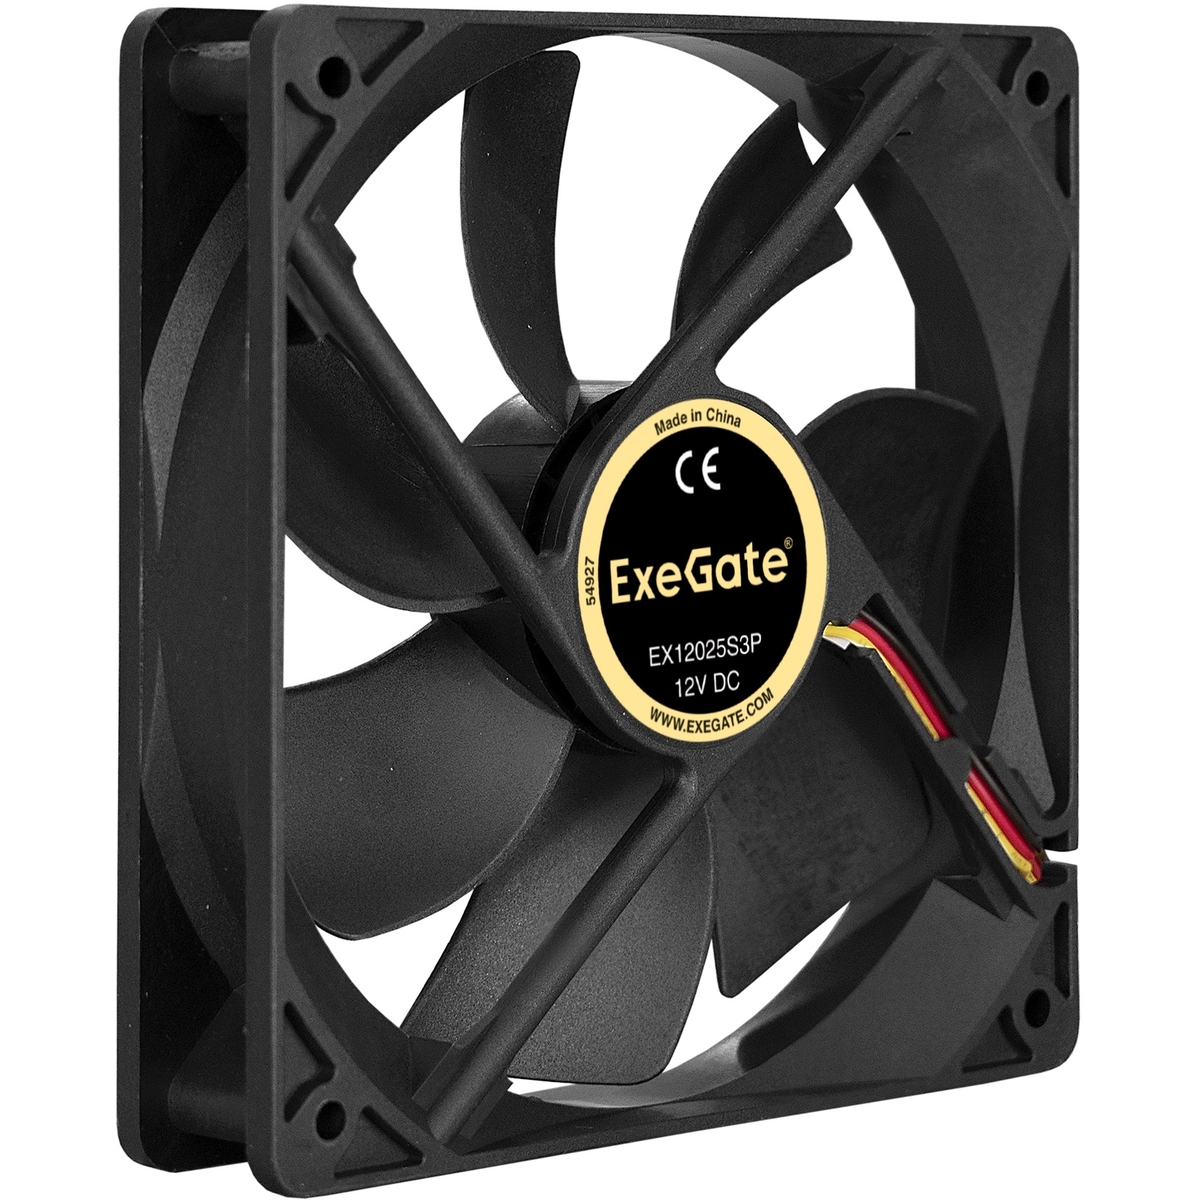  ExeGate EX12025S3P